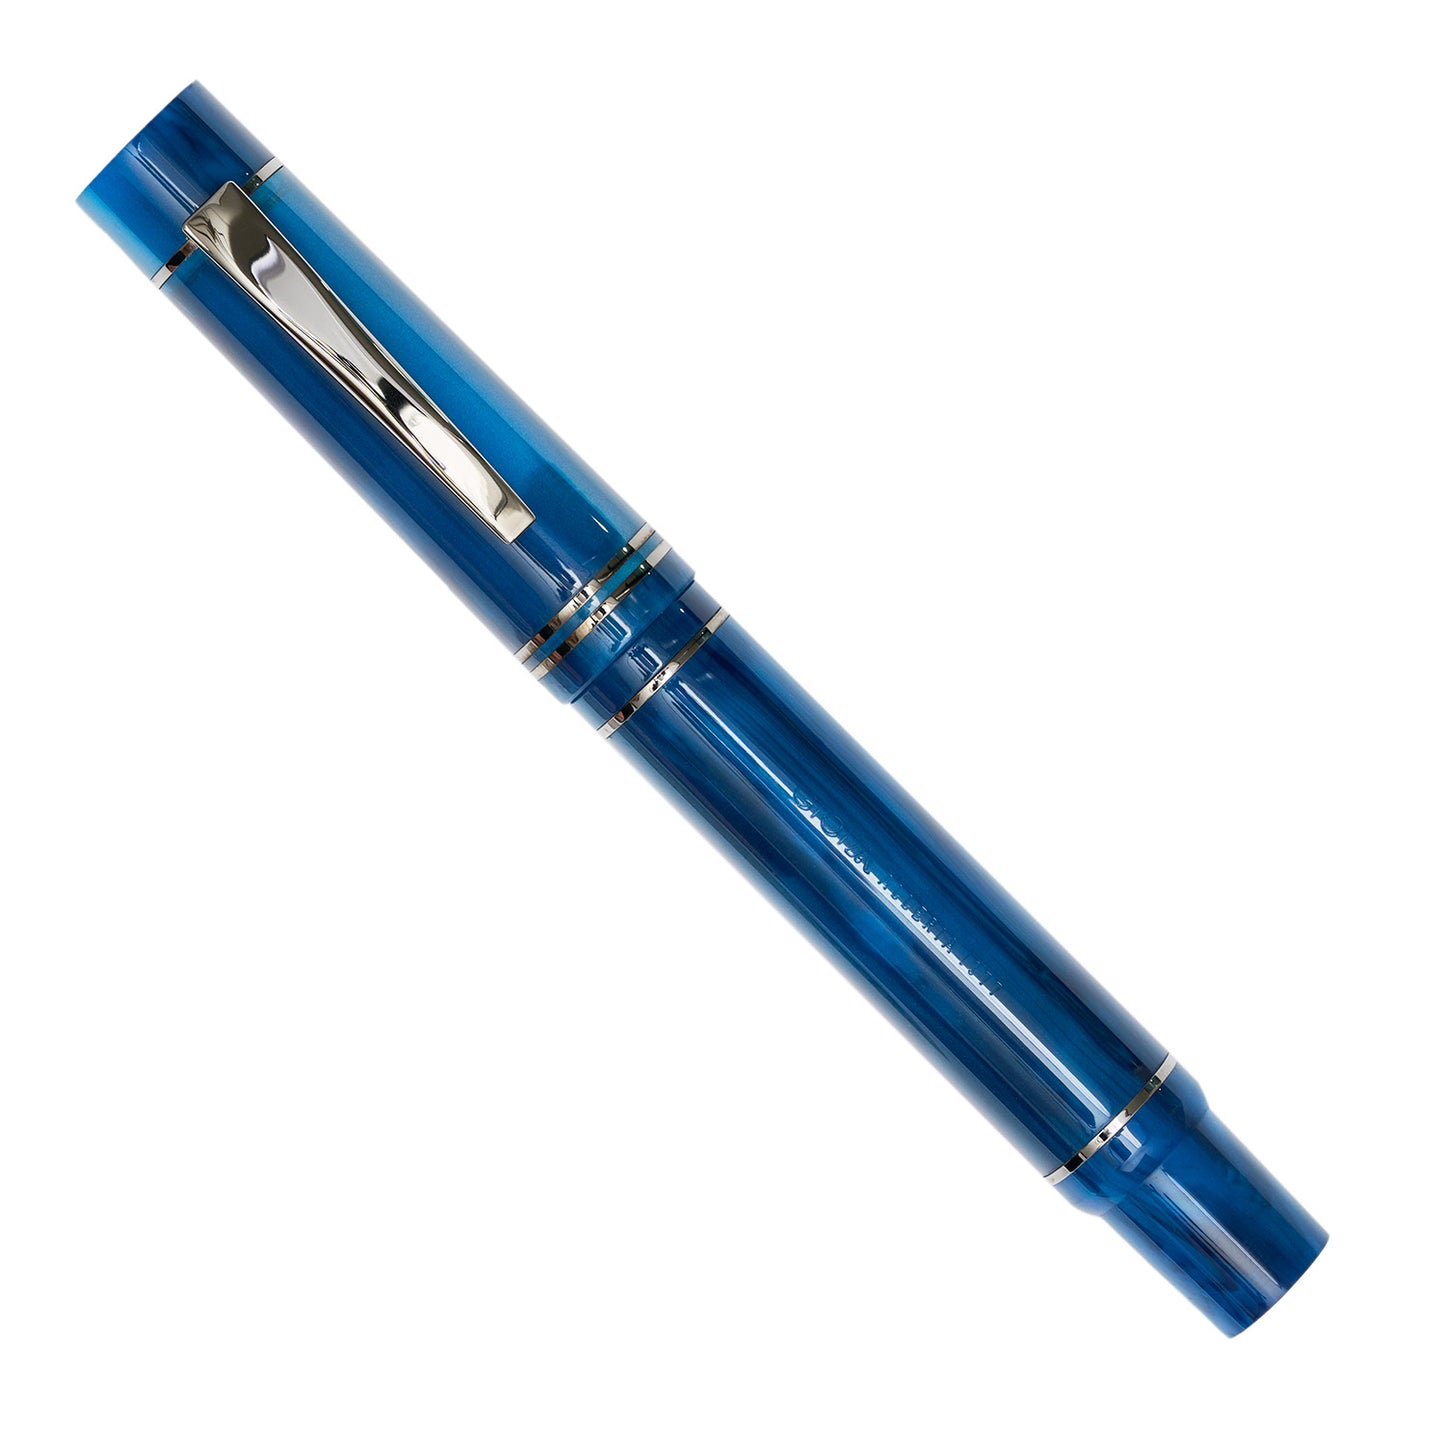 Gioia Alleria Piston Filler Fountain Pen - Grotta Azzurra | Made in Italy 